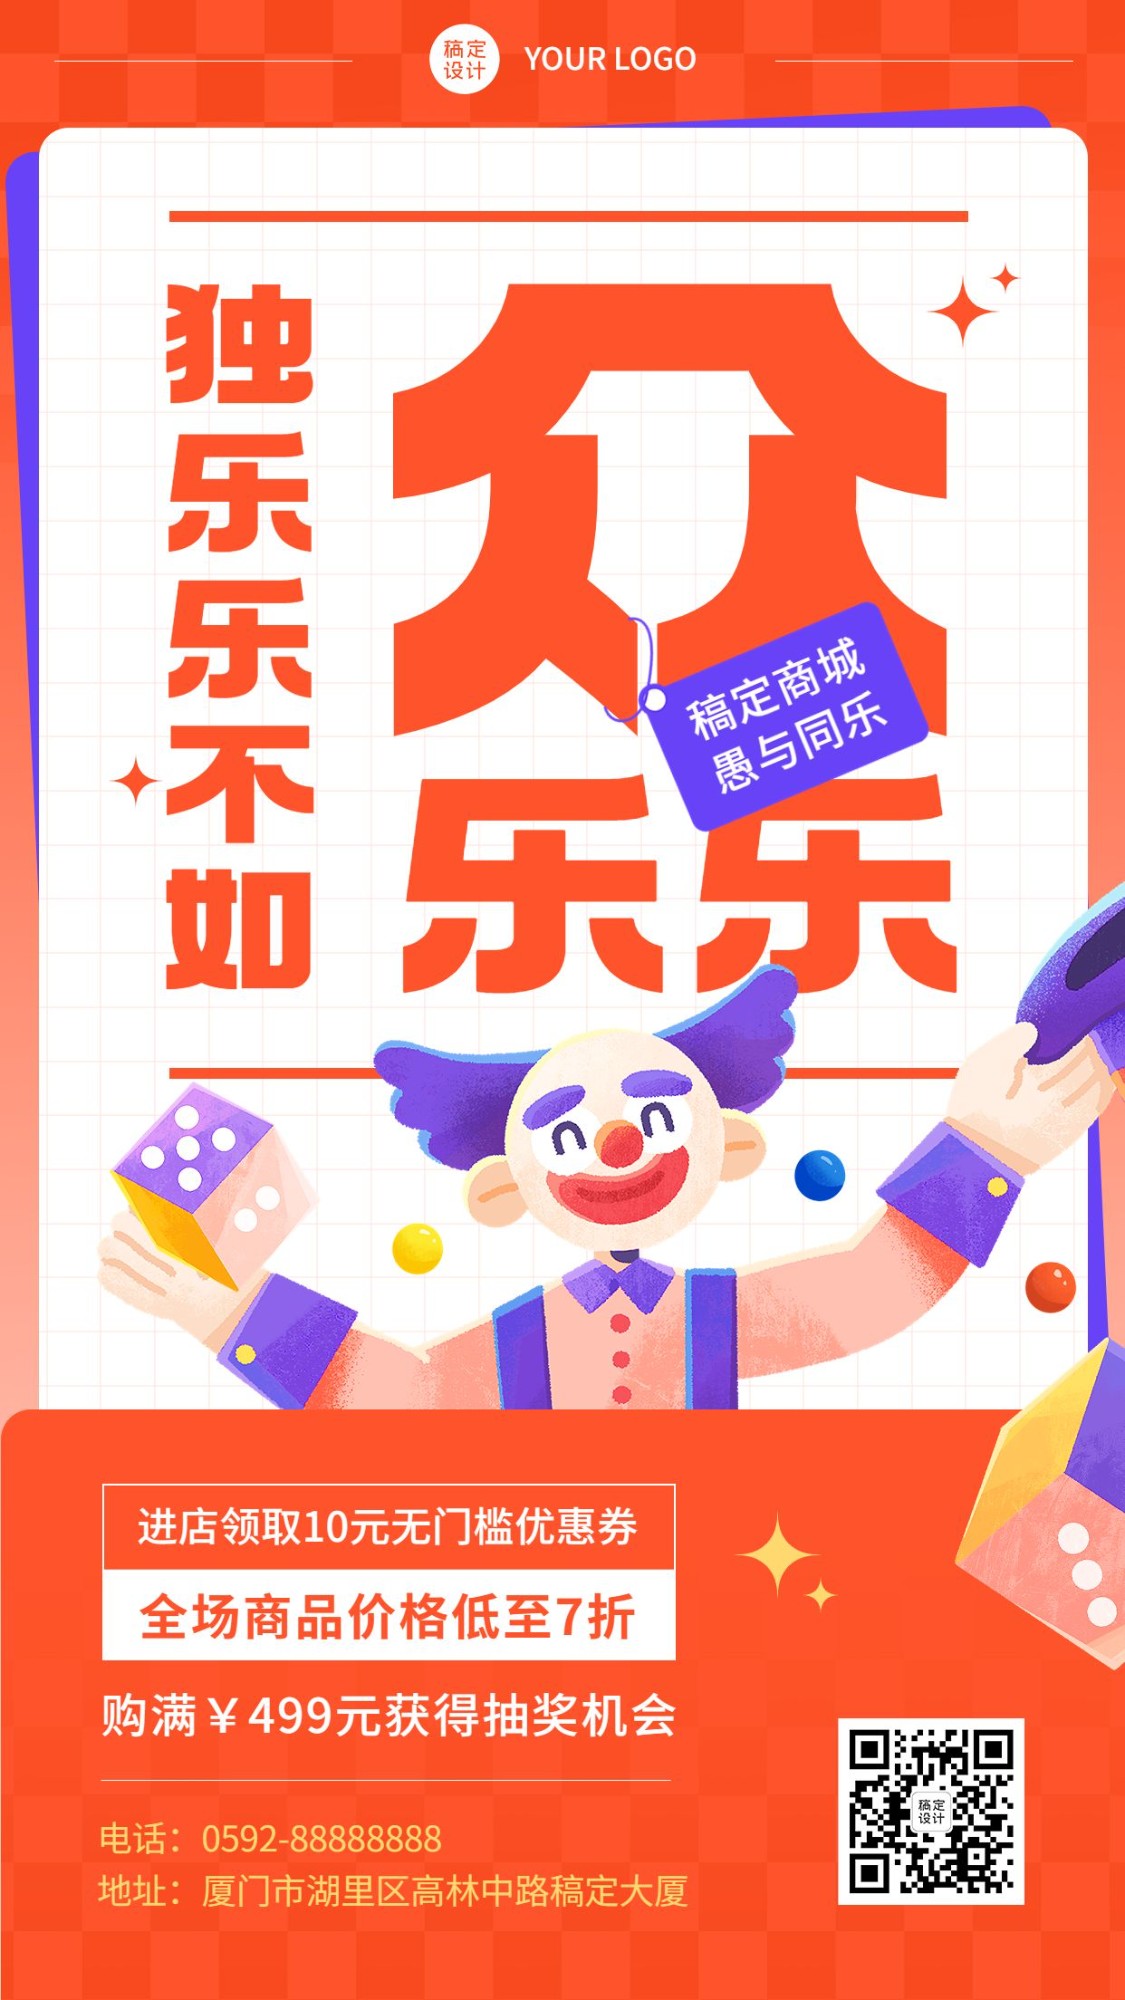 愚人节节日促销插画手机海报